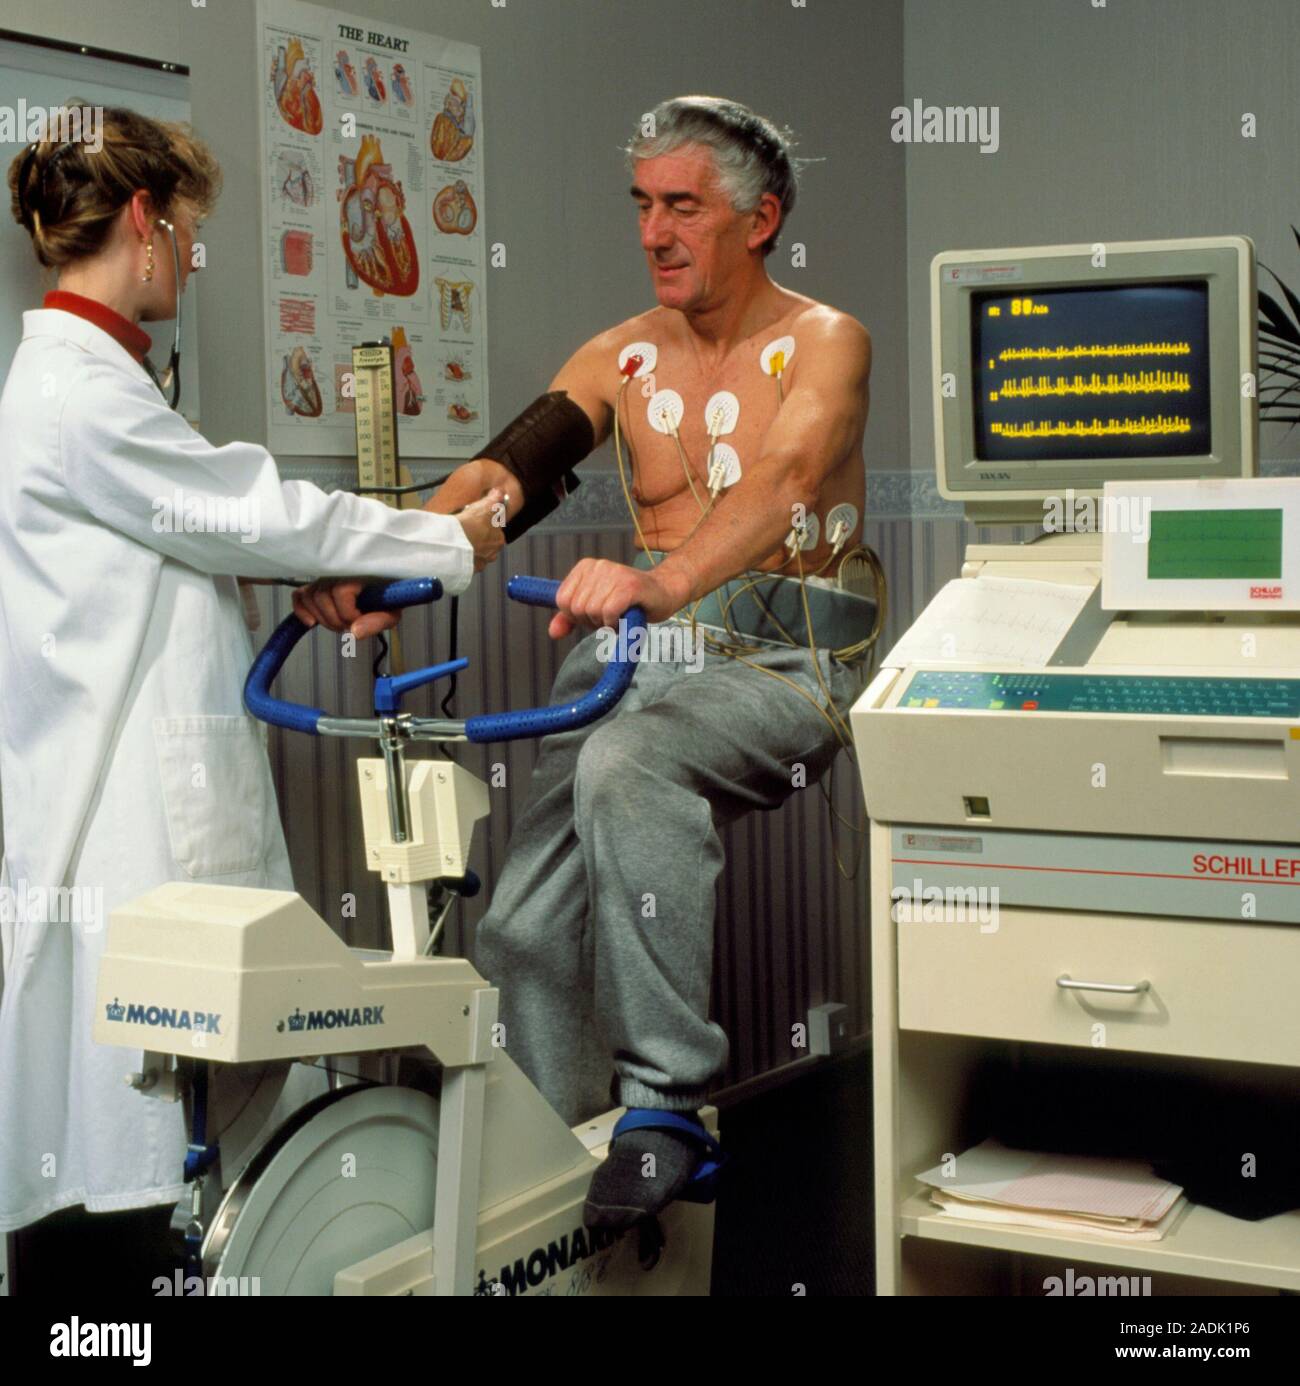 Elektrokardiogramm (EKG) Stress. Eine ältere männliche Herzpatienten  Übungen auf einem Fahrrad, während der EKG-Maschine (rechts) seinen  Herzschlag Maßnahmen. Ekg-stres Stockfotografie - Alamy